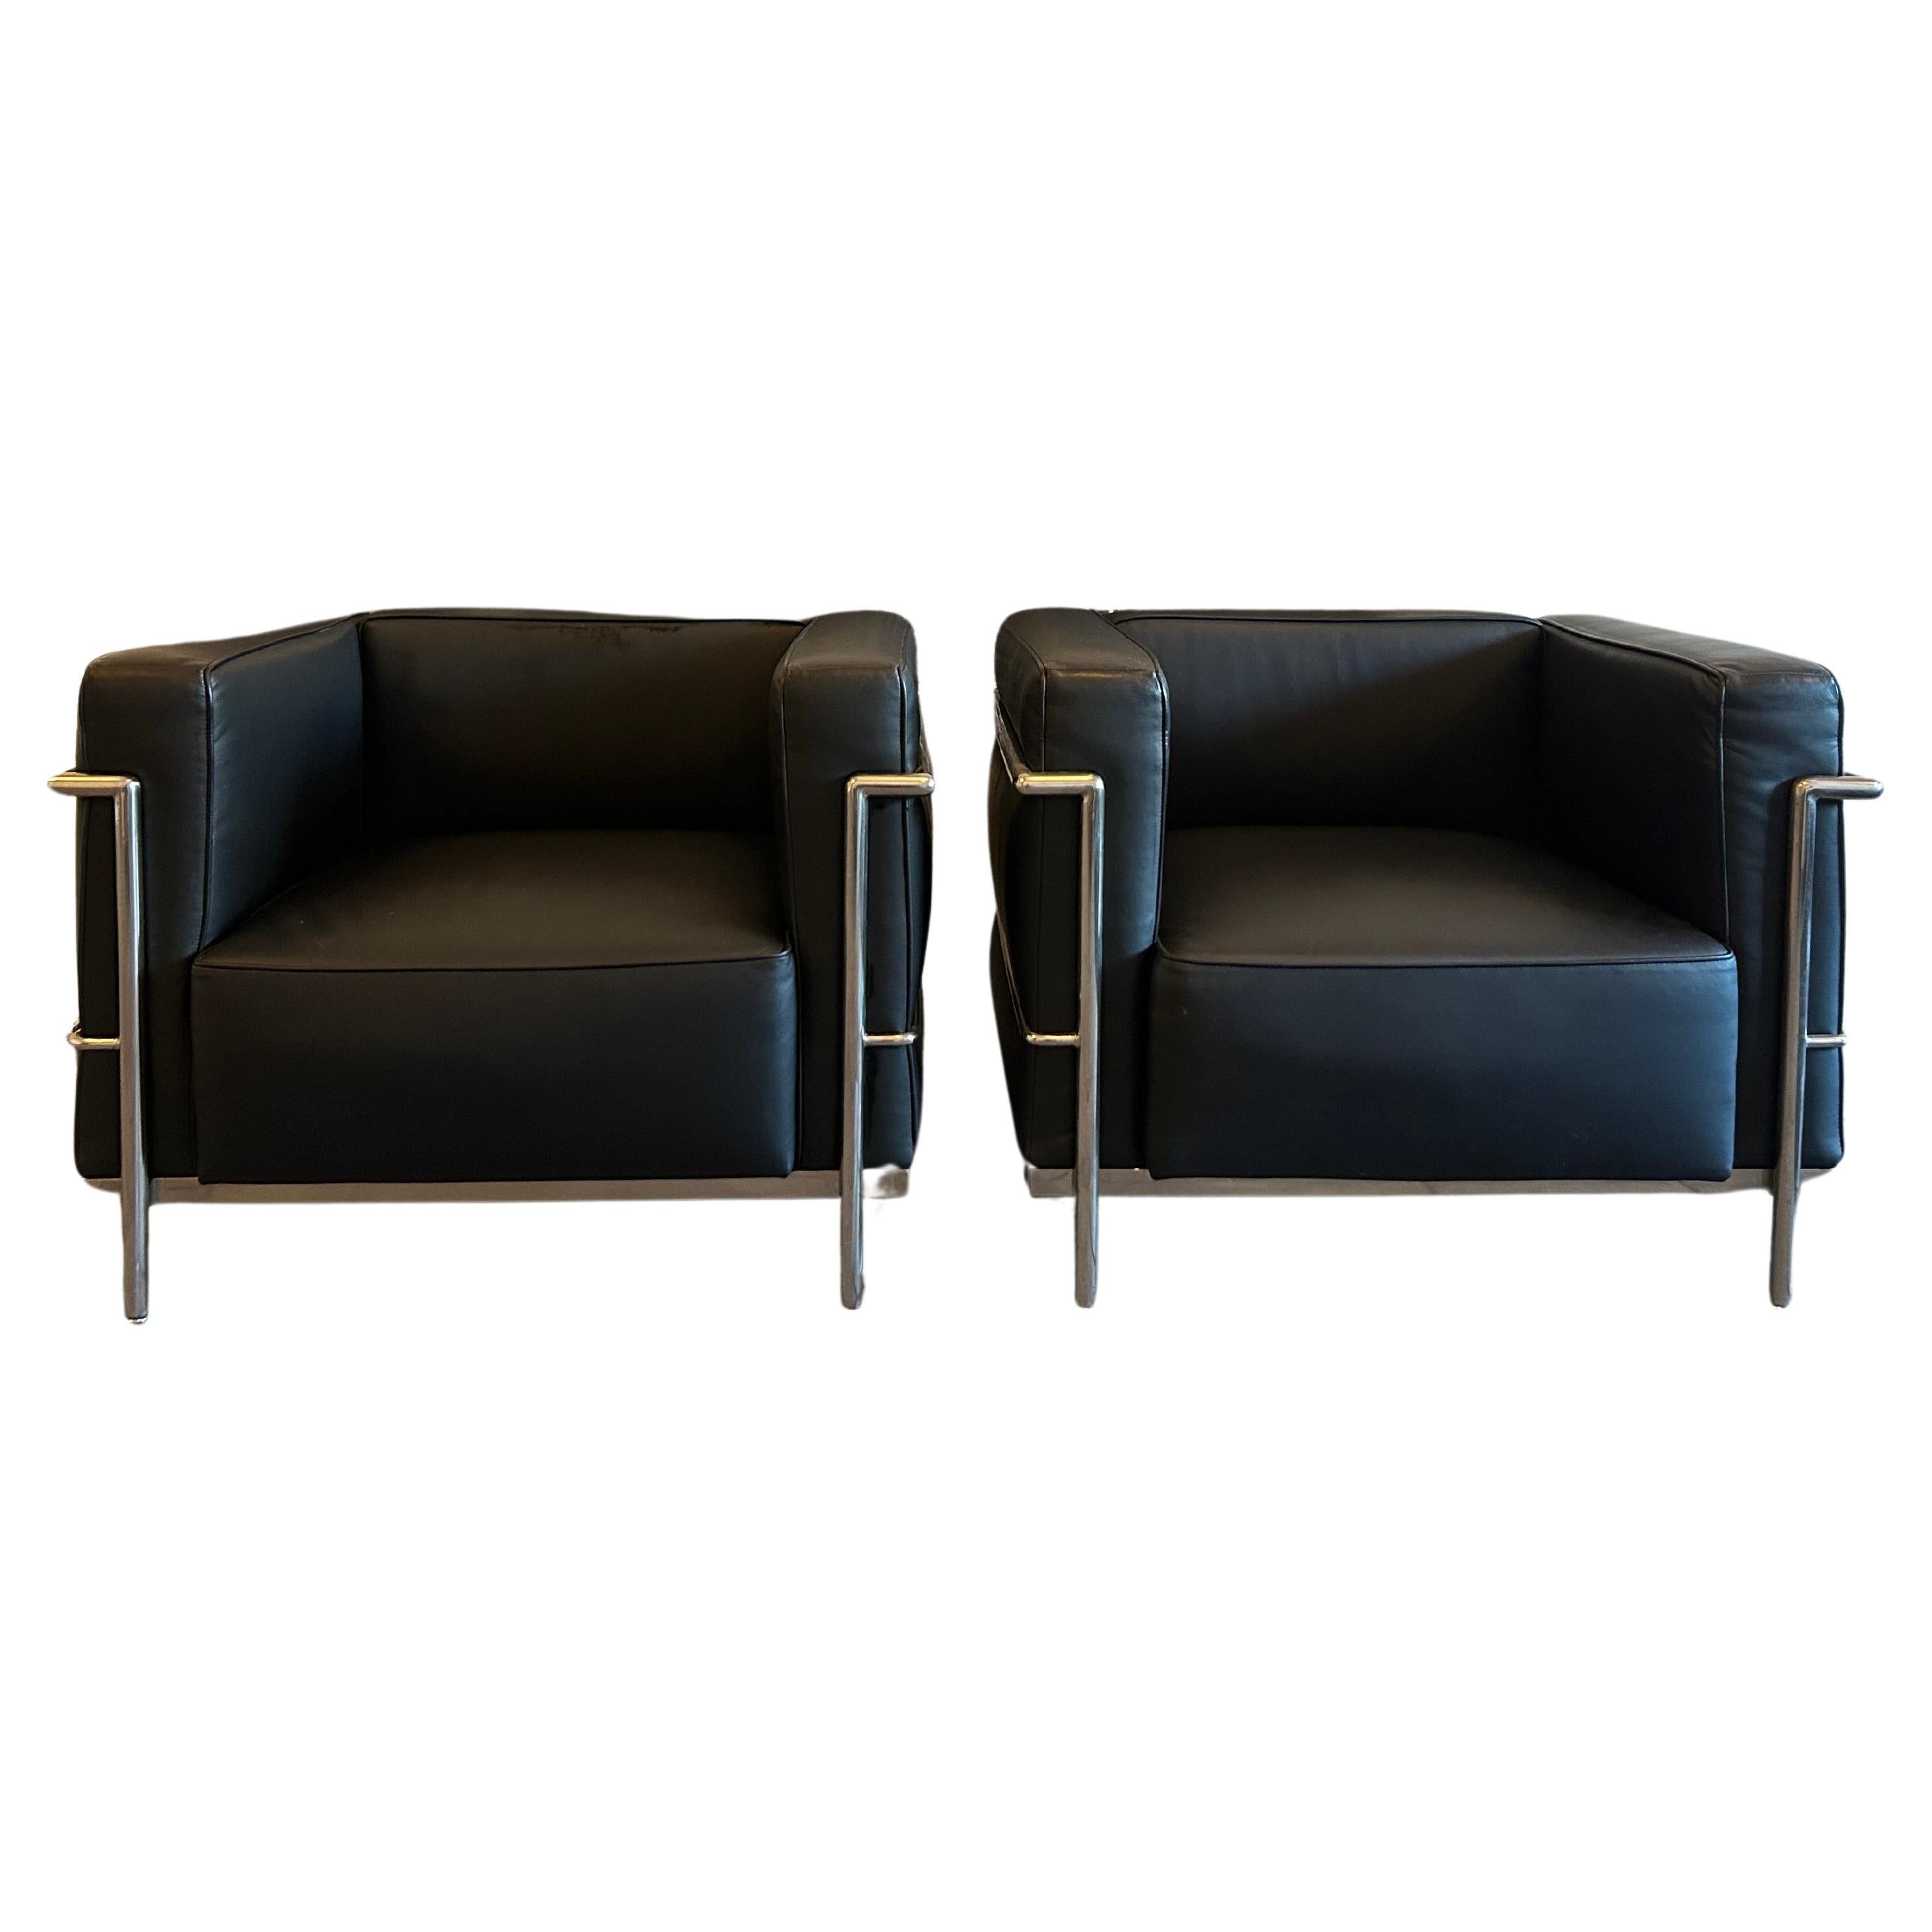 Moderne LC3 Loungesessel mit schwarzem Leder und verchromtem Rahmen von Le Corbusier, Paar